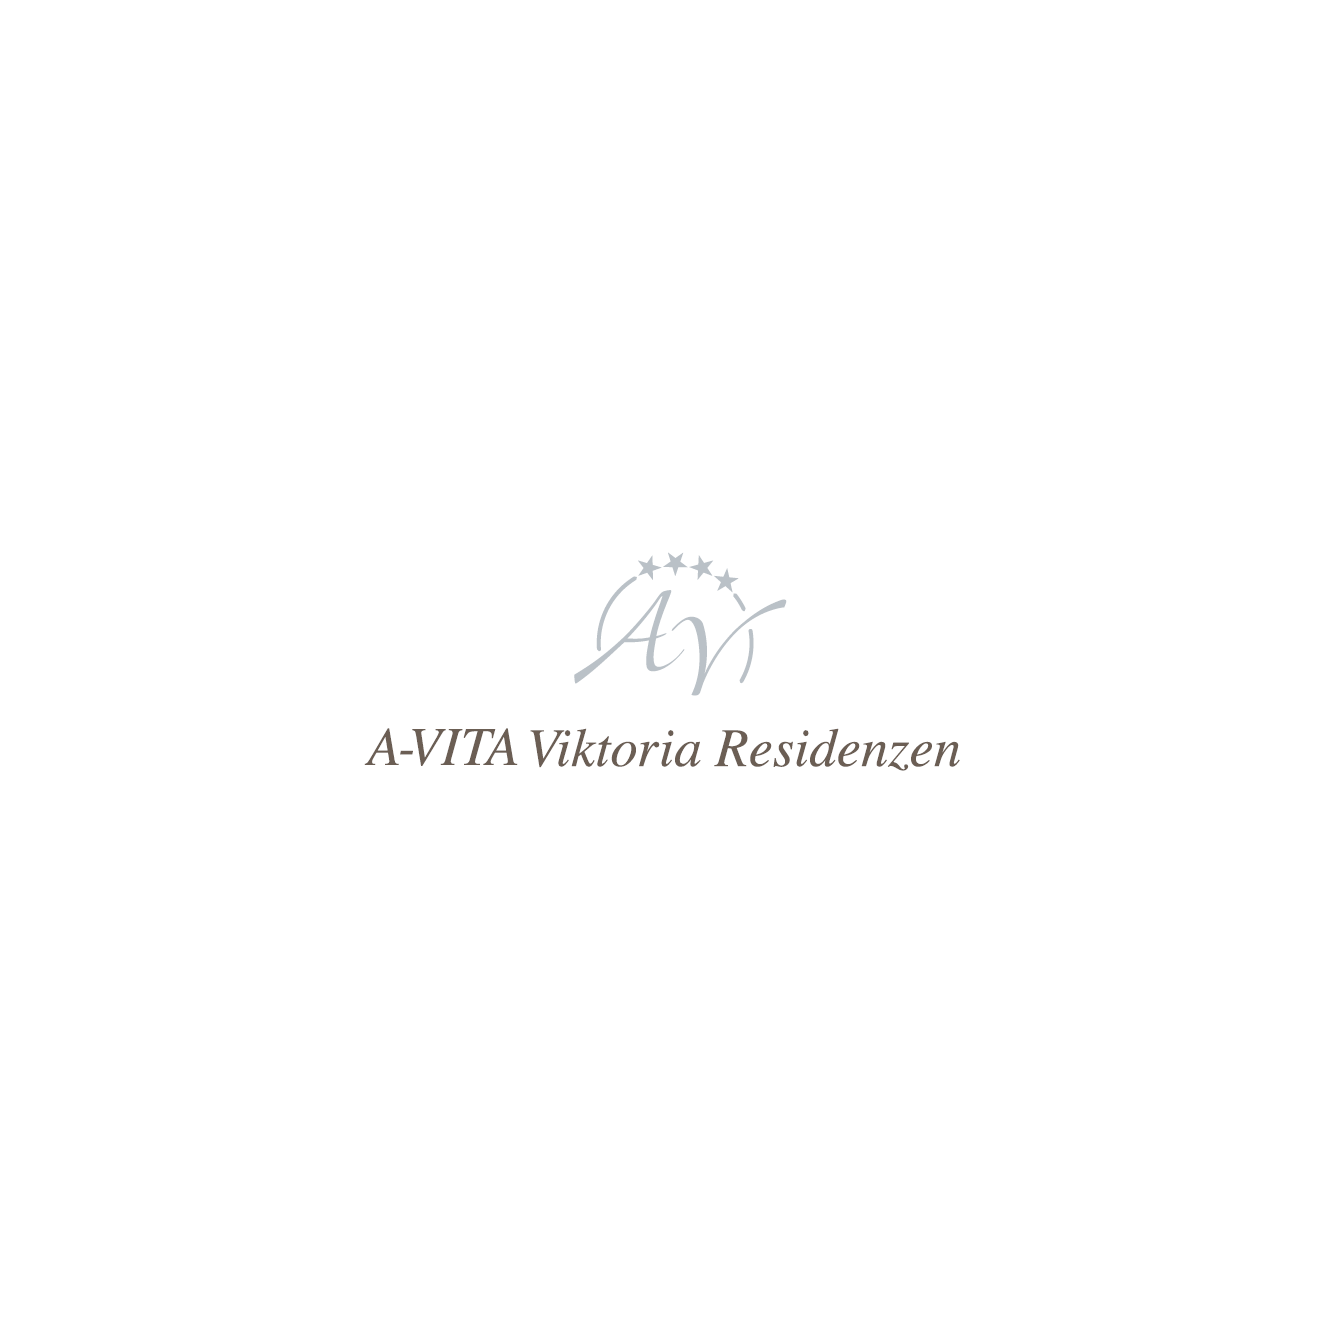 A-VITA VIKTORIA Residenzen Logo